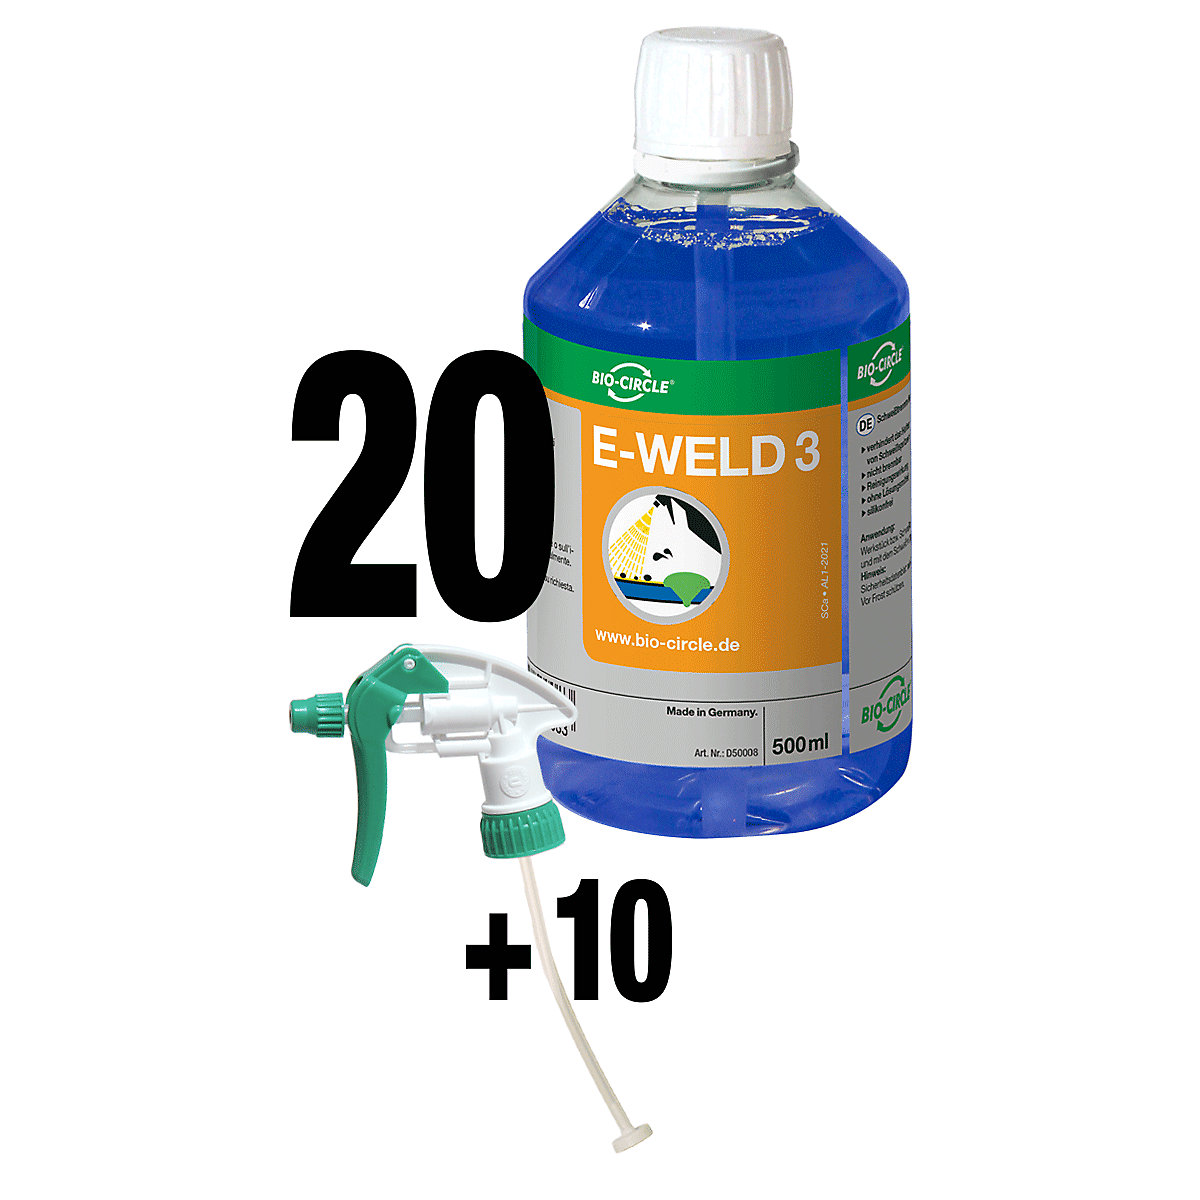 Ochranný svářečský sprej E-WELD 3 - Bio-Circle